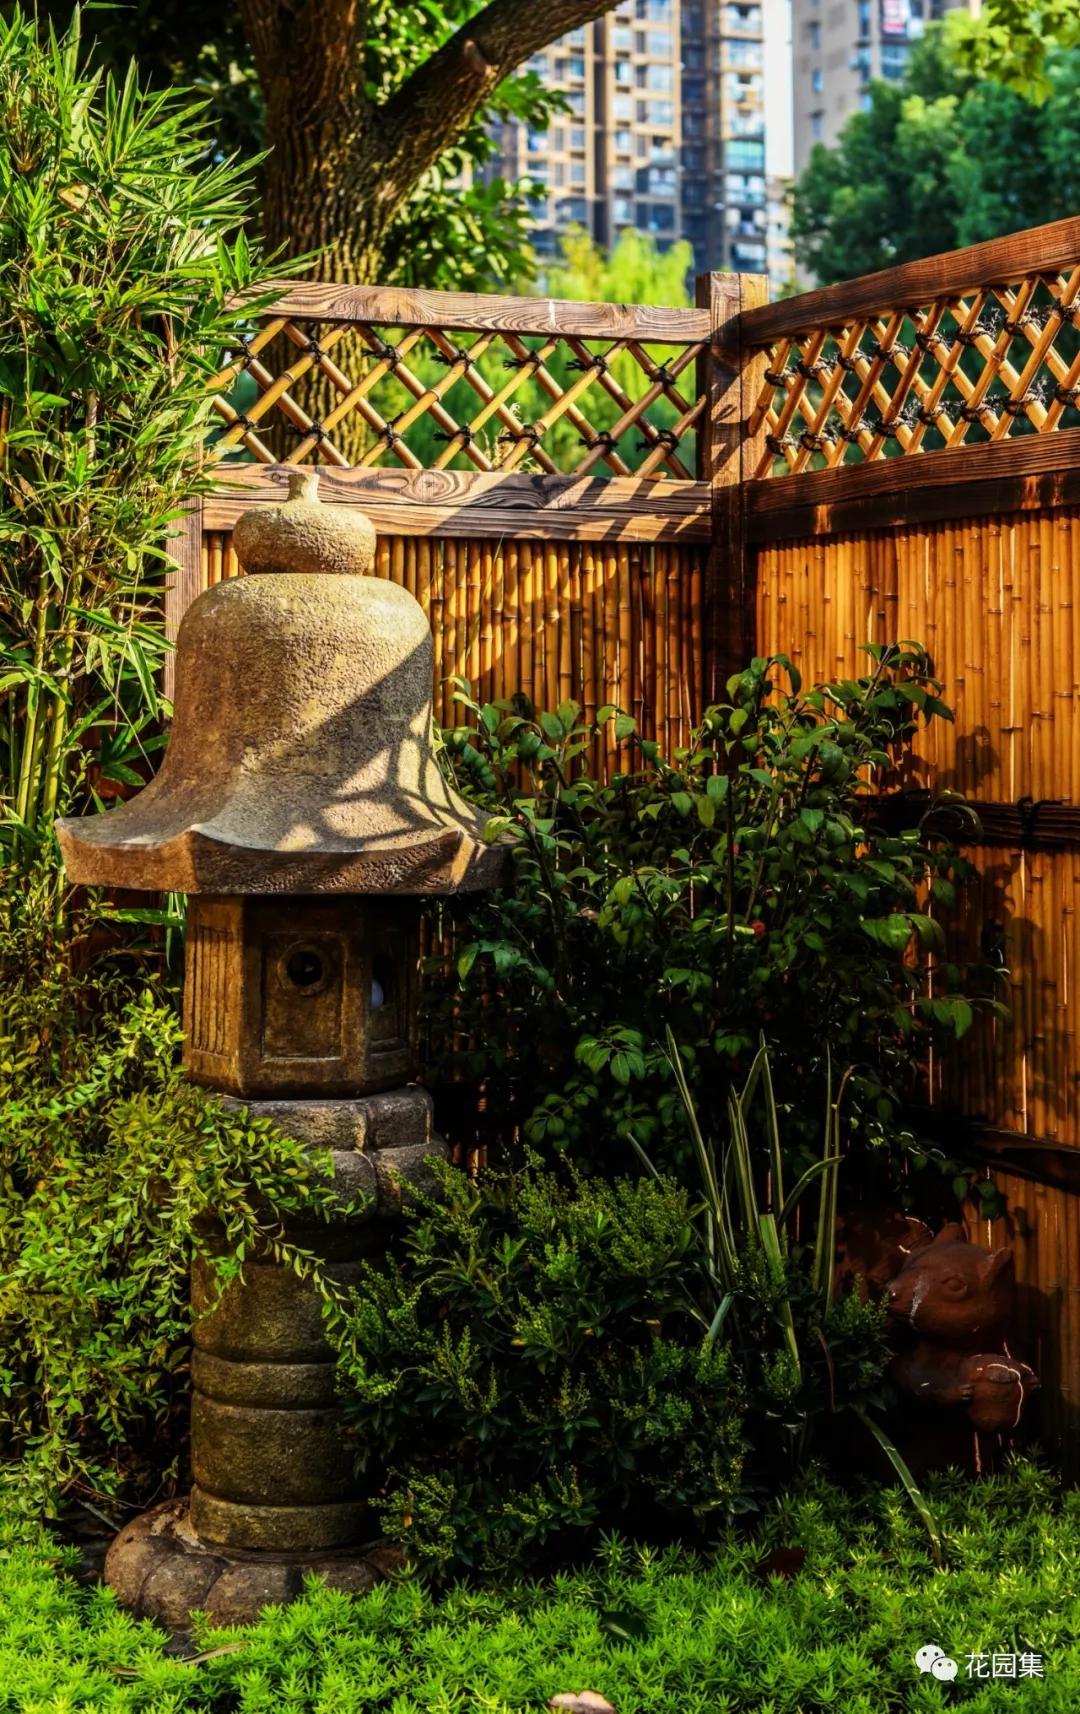 最小的日式庭院 | 坪庭，方寸间也能感受侘寂之美